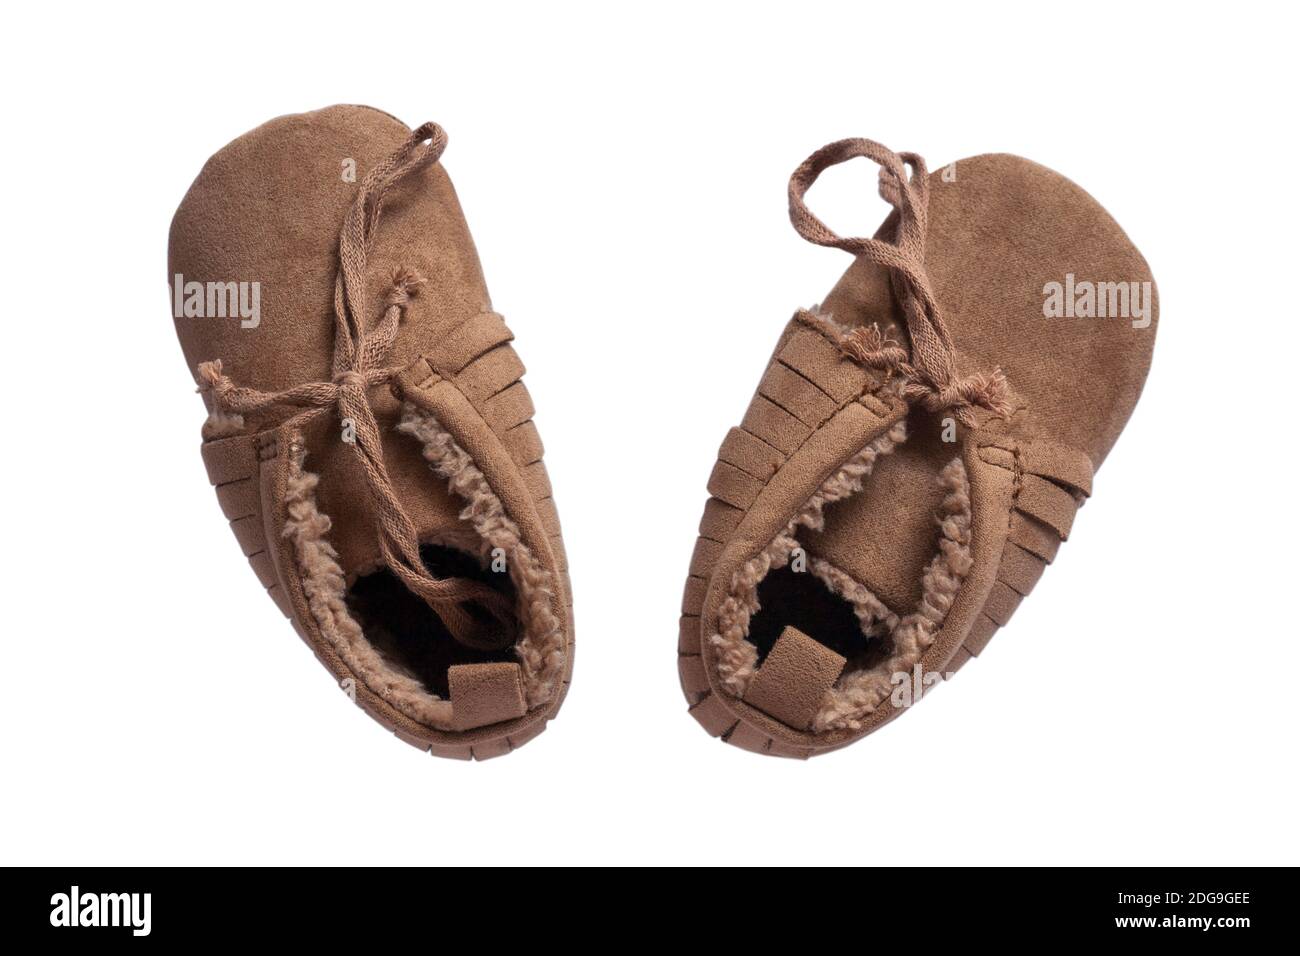 Mini chaussons de bébé isolés sur fond blanc Banque D'Images